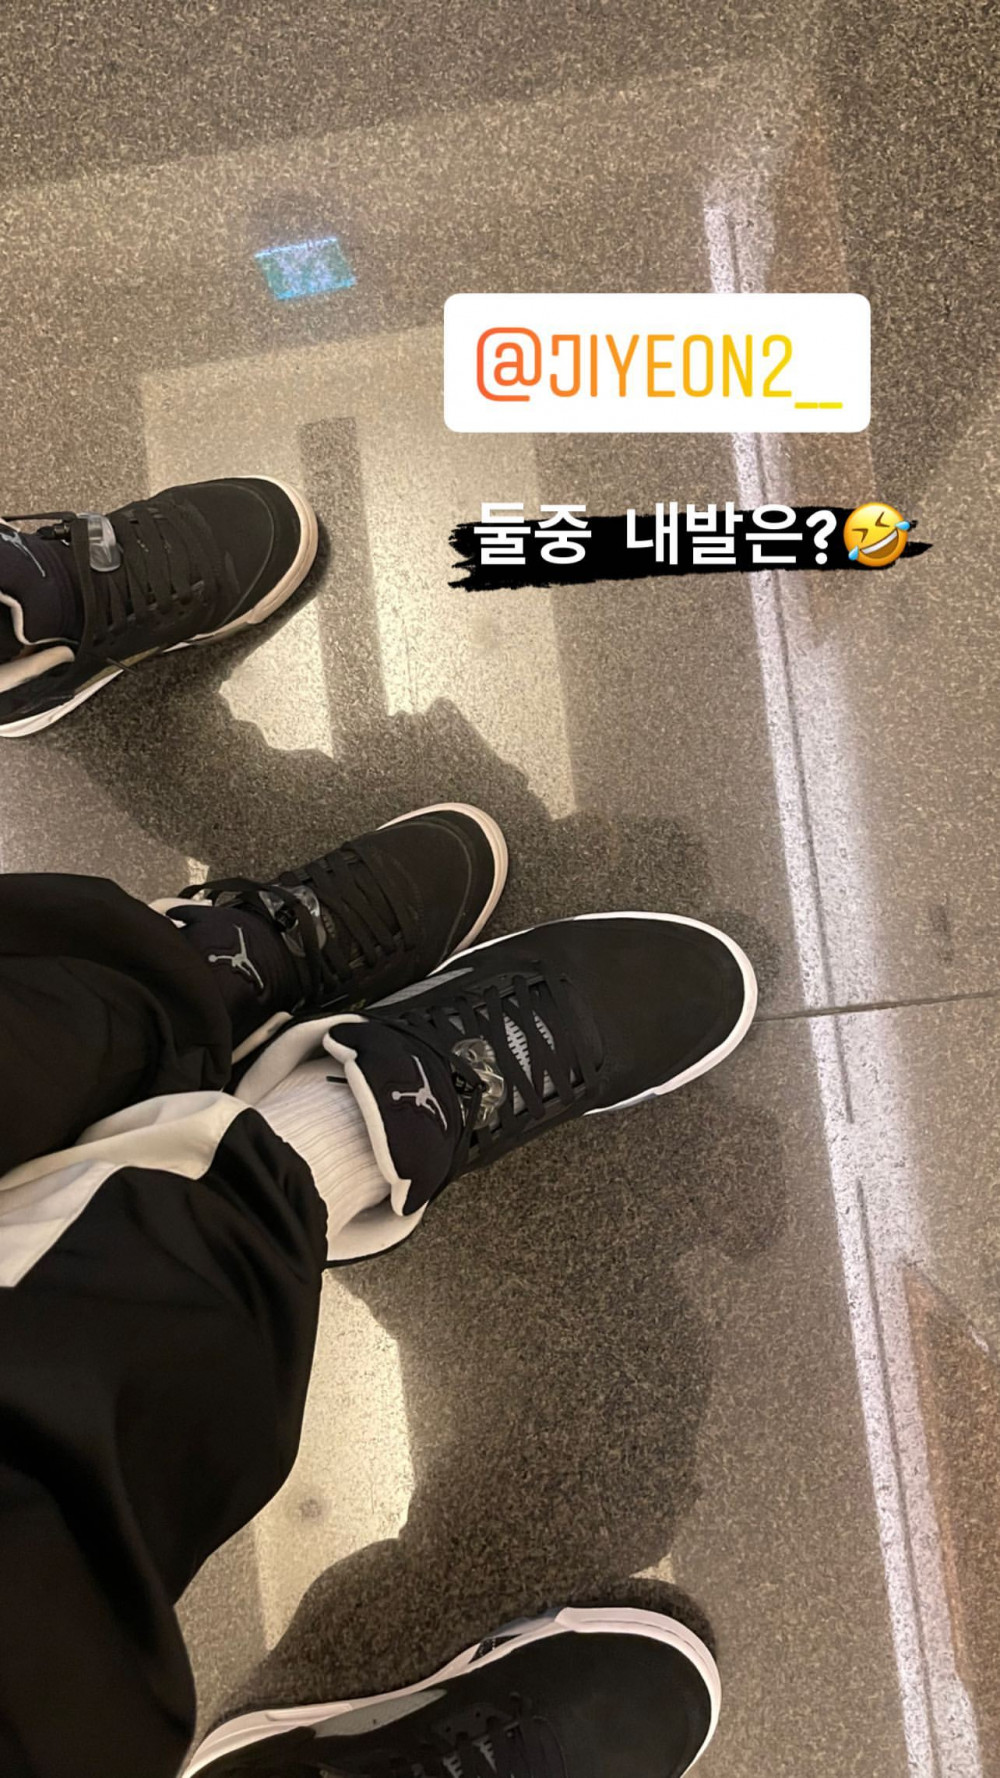 Жених Джиён из T-ara поделился милой фотографией их парных кроссовок